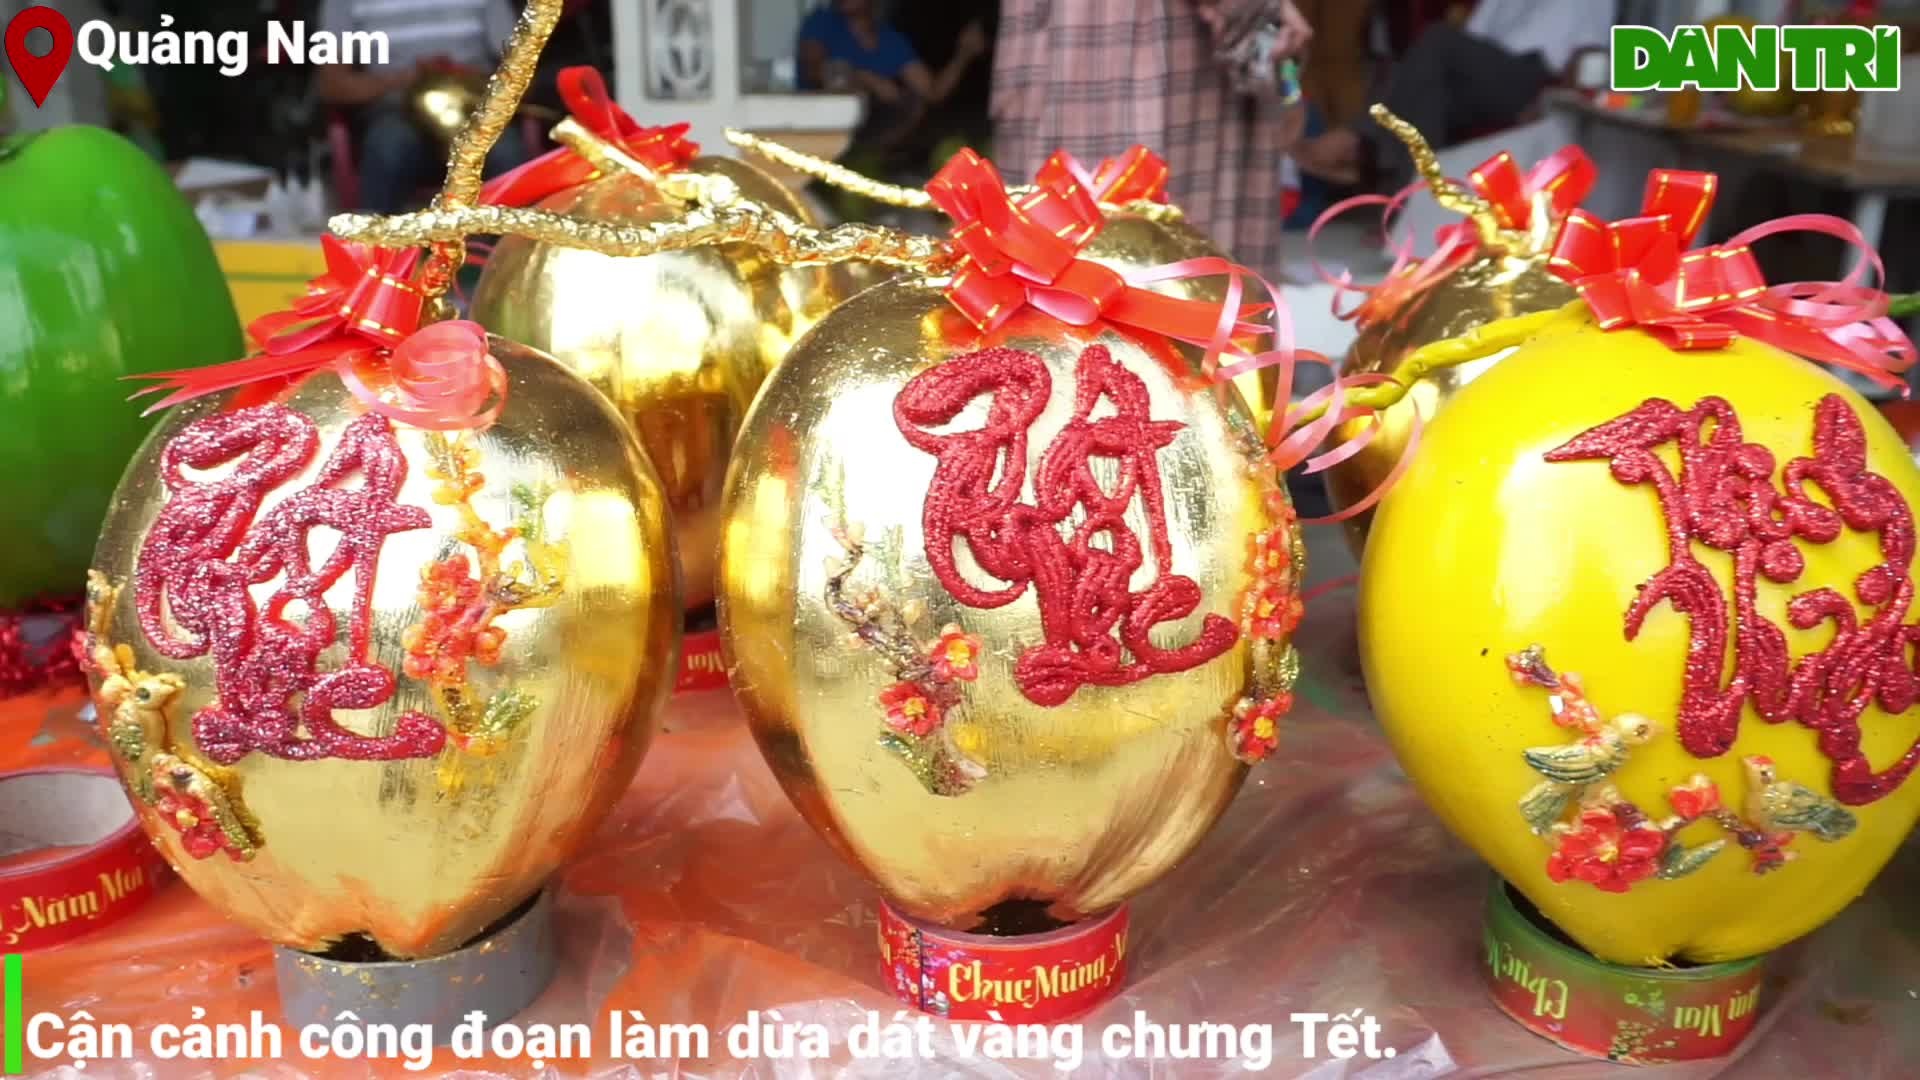 Video: Cận cảnh công đoạn làm dừa dát vàng chưng Tết | Báo Dân trí